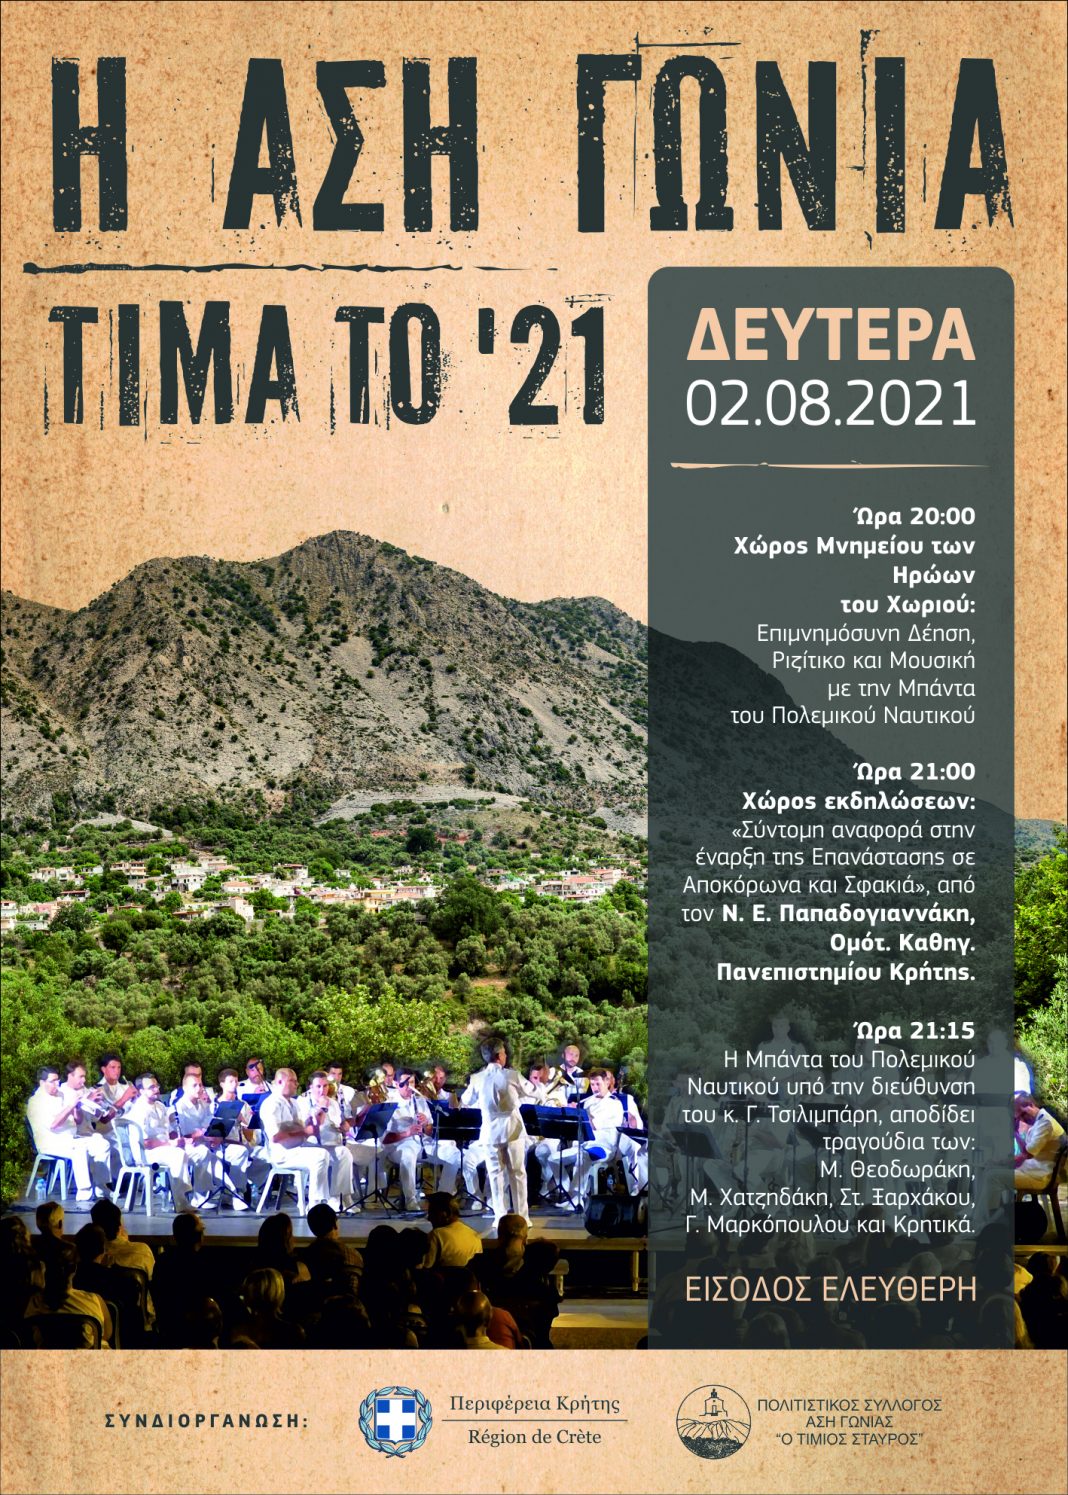 Εκδήλωση για τα 200 χρόνια από την Ελληνική Επανάσταση του 1821 στην Ασή Γωνιά